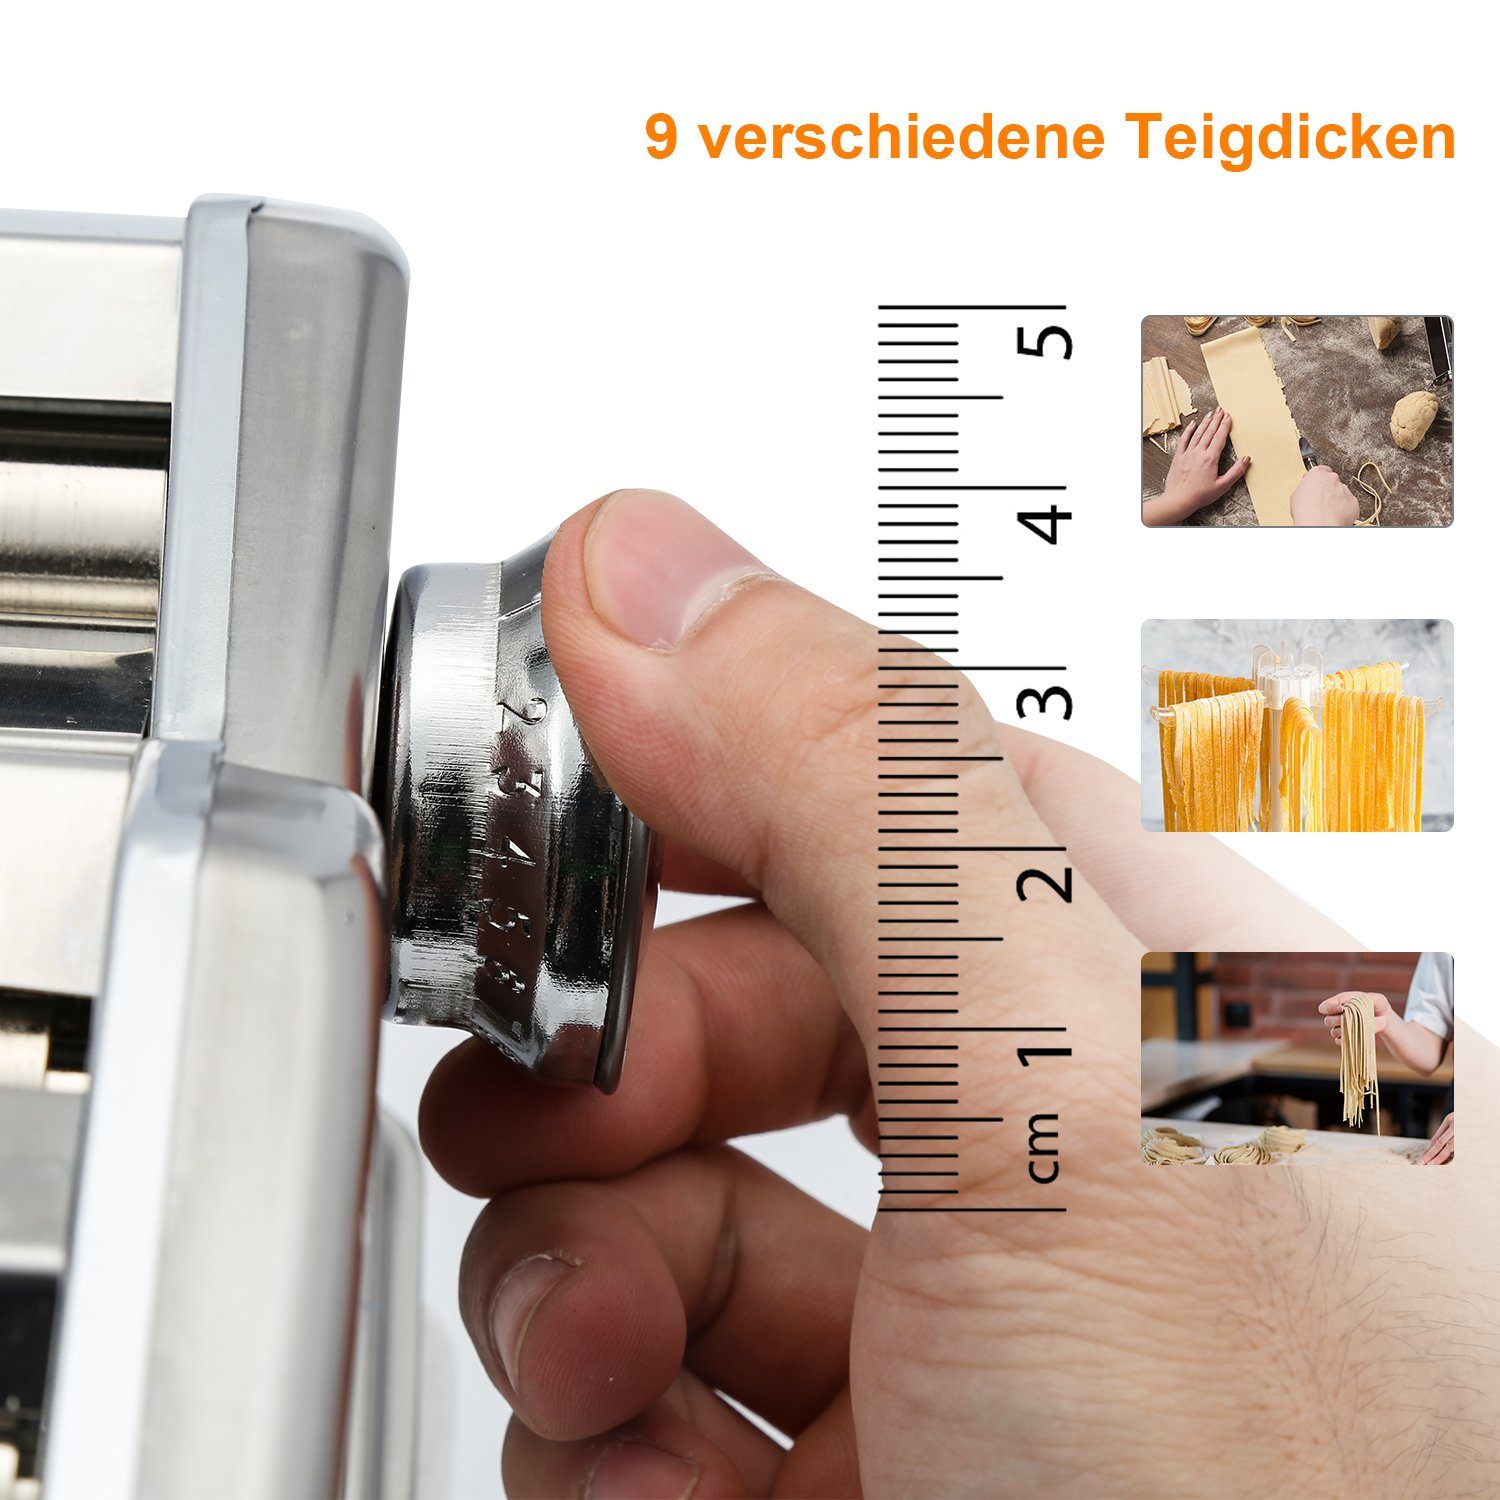 Gimisgu Cannelloni Nudelmaschine für Frische Lasagne Maker Walze Nudelaufsätze Pasta Pastamaschine Edelstahl Bandnudeln manuelle, Spaghetti